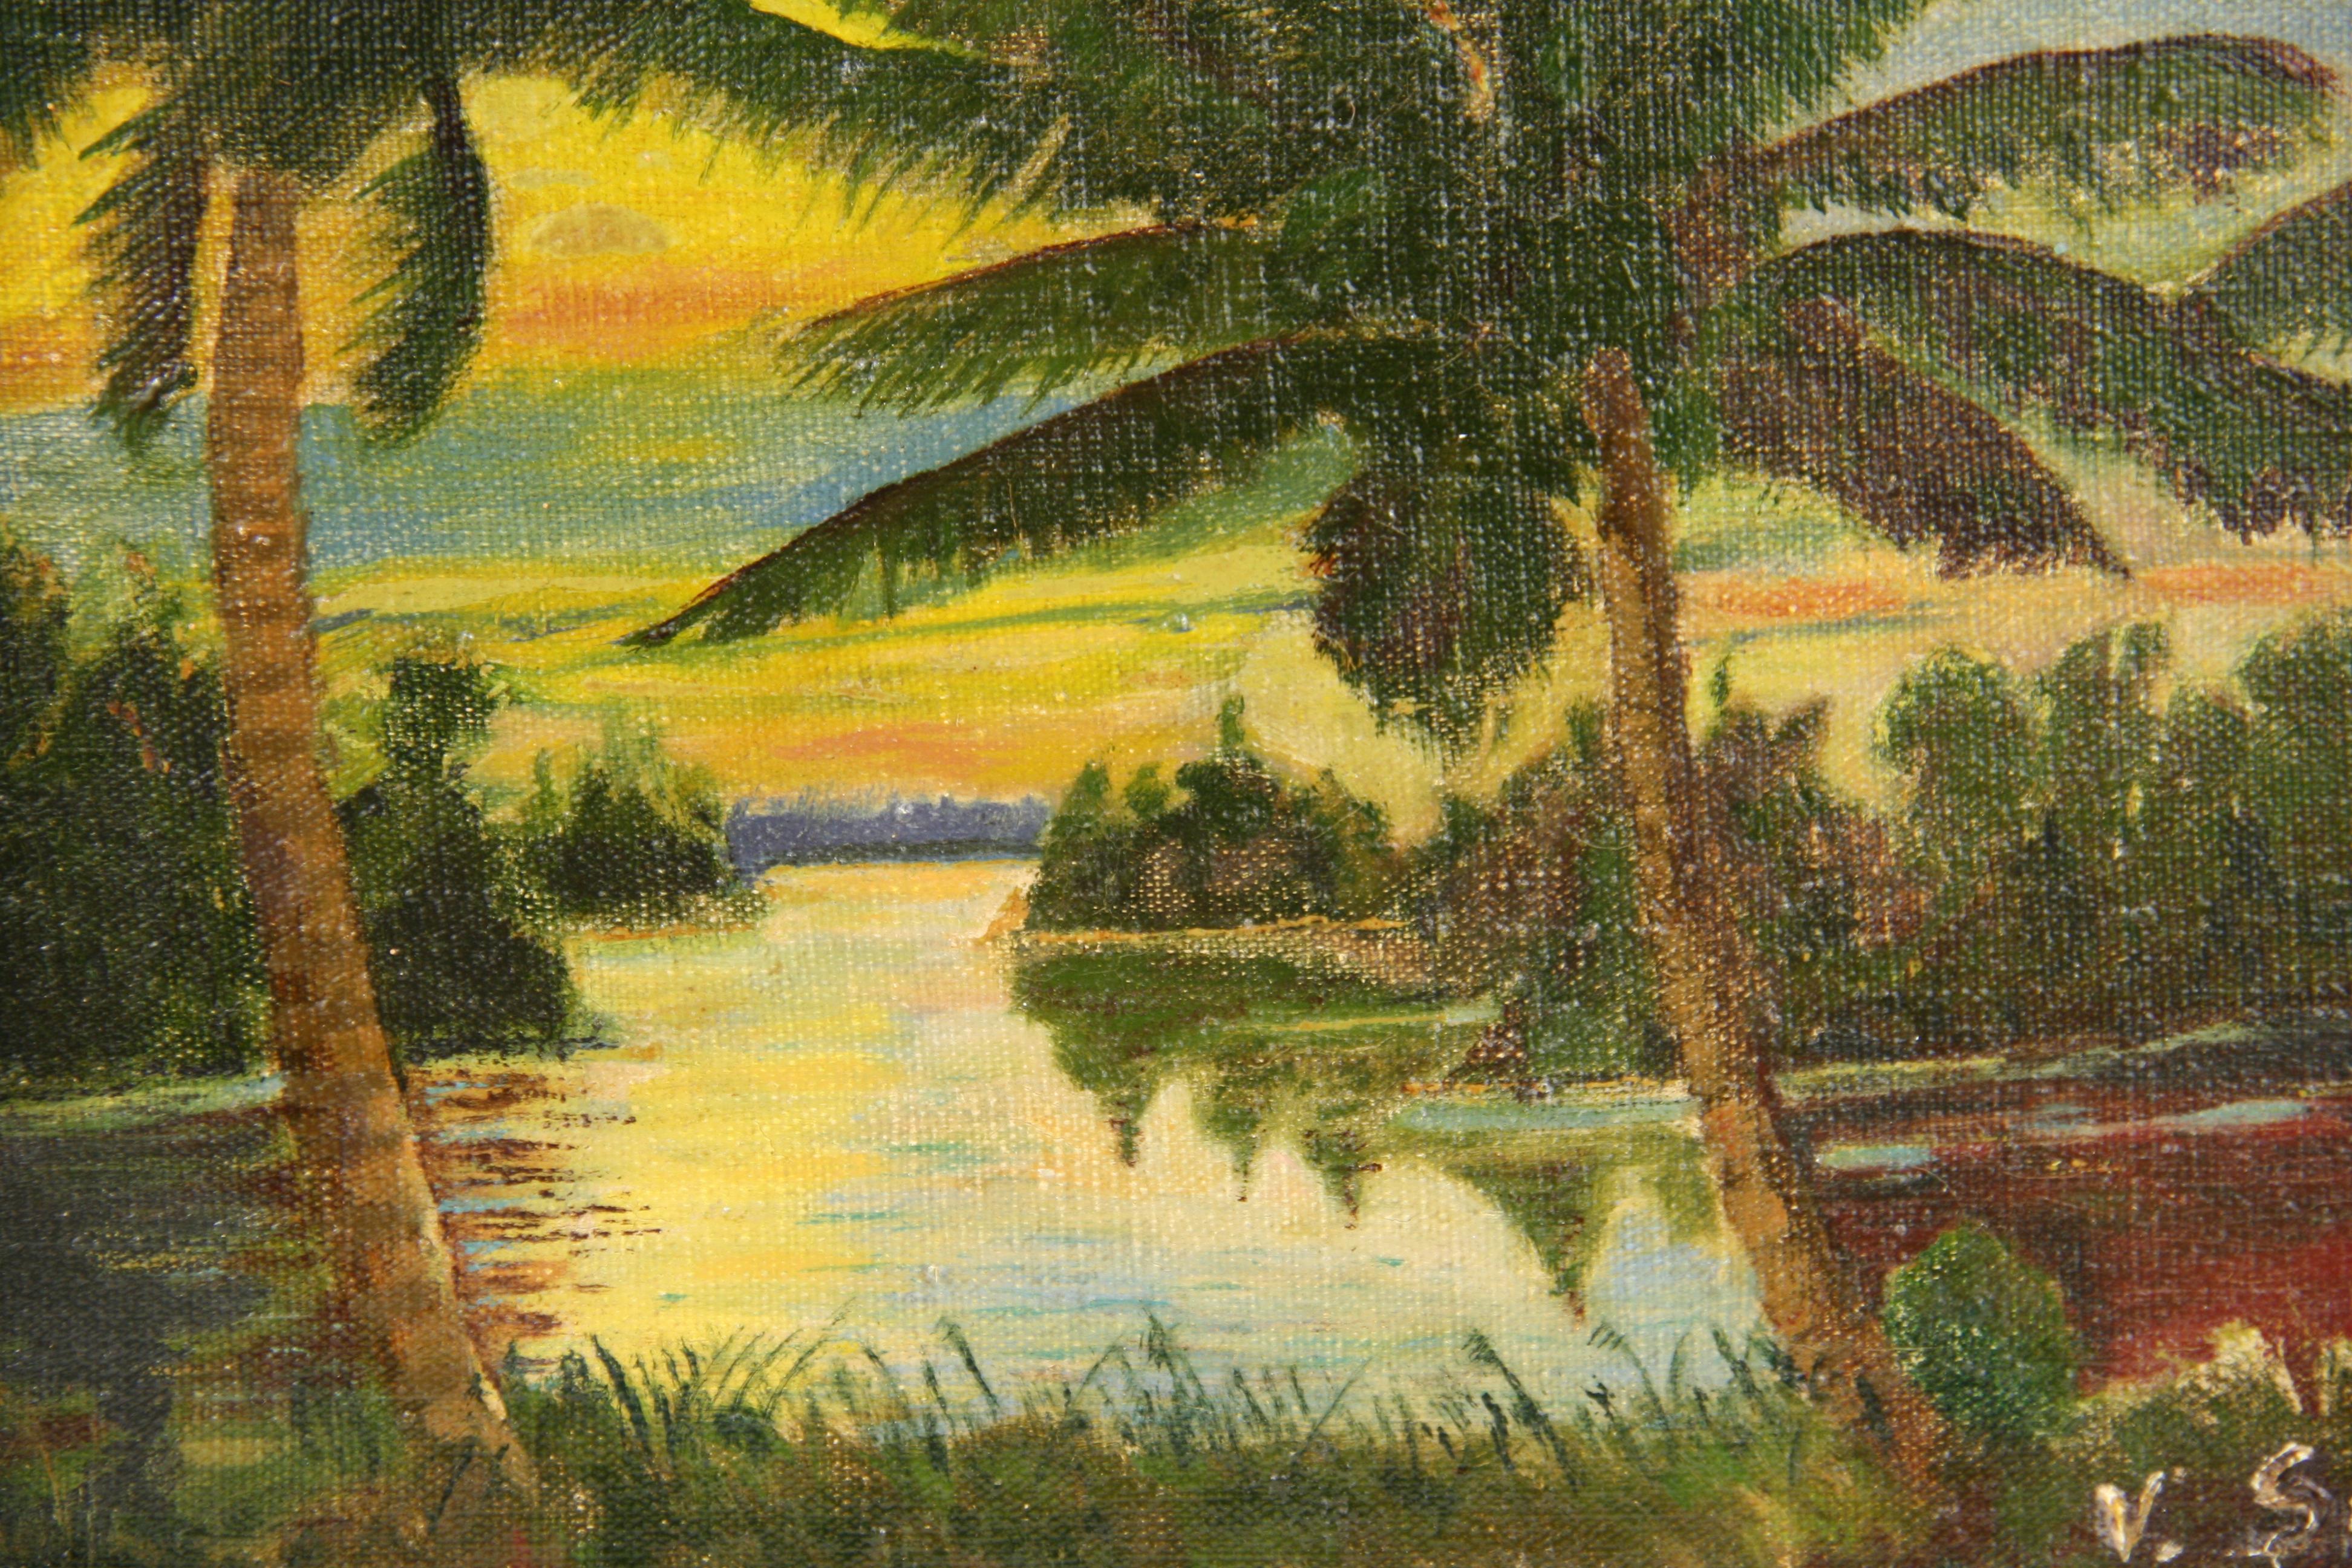 Tropical Sunset Landscape - Painting by V.Sumner